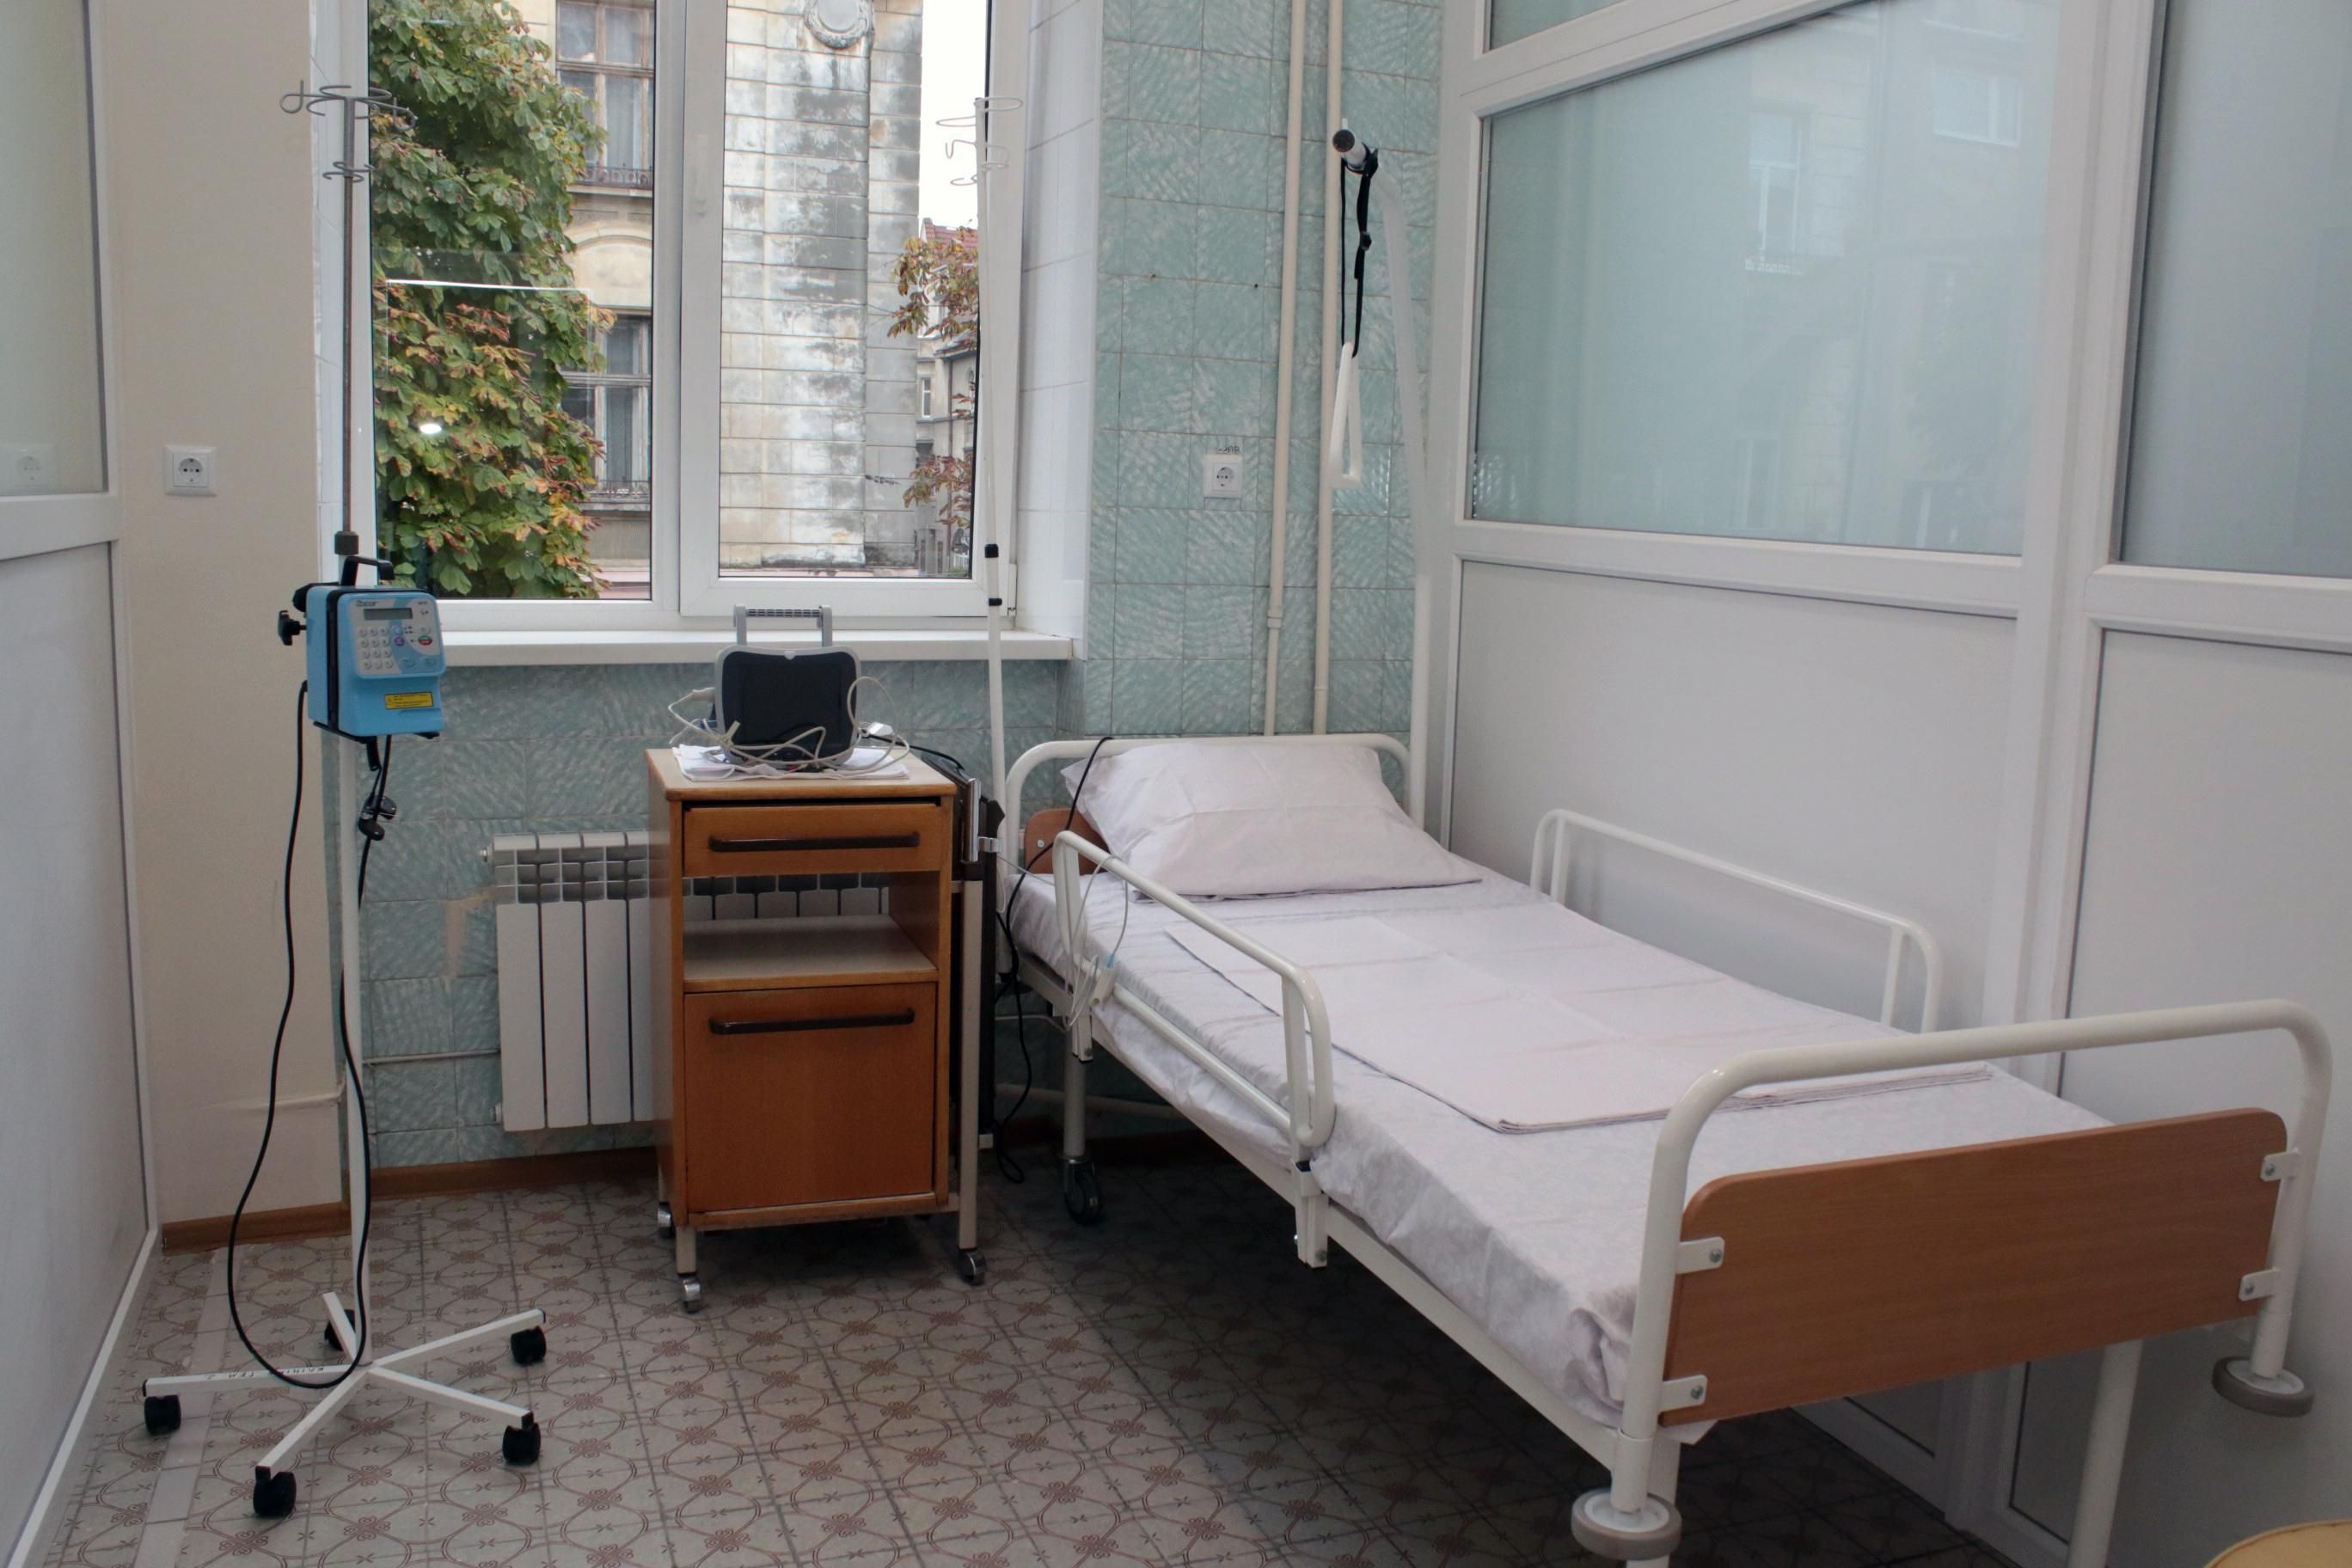 Молодой парень умер при подозрительных обстоятельствах в больнице на Киевщине